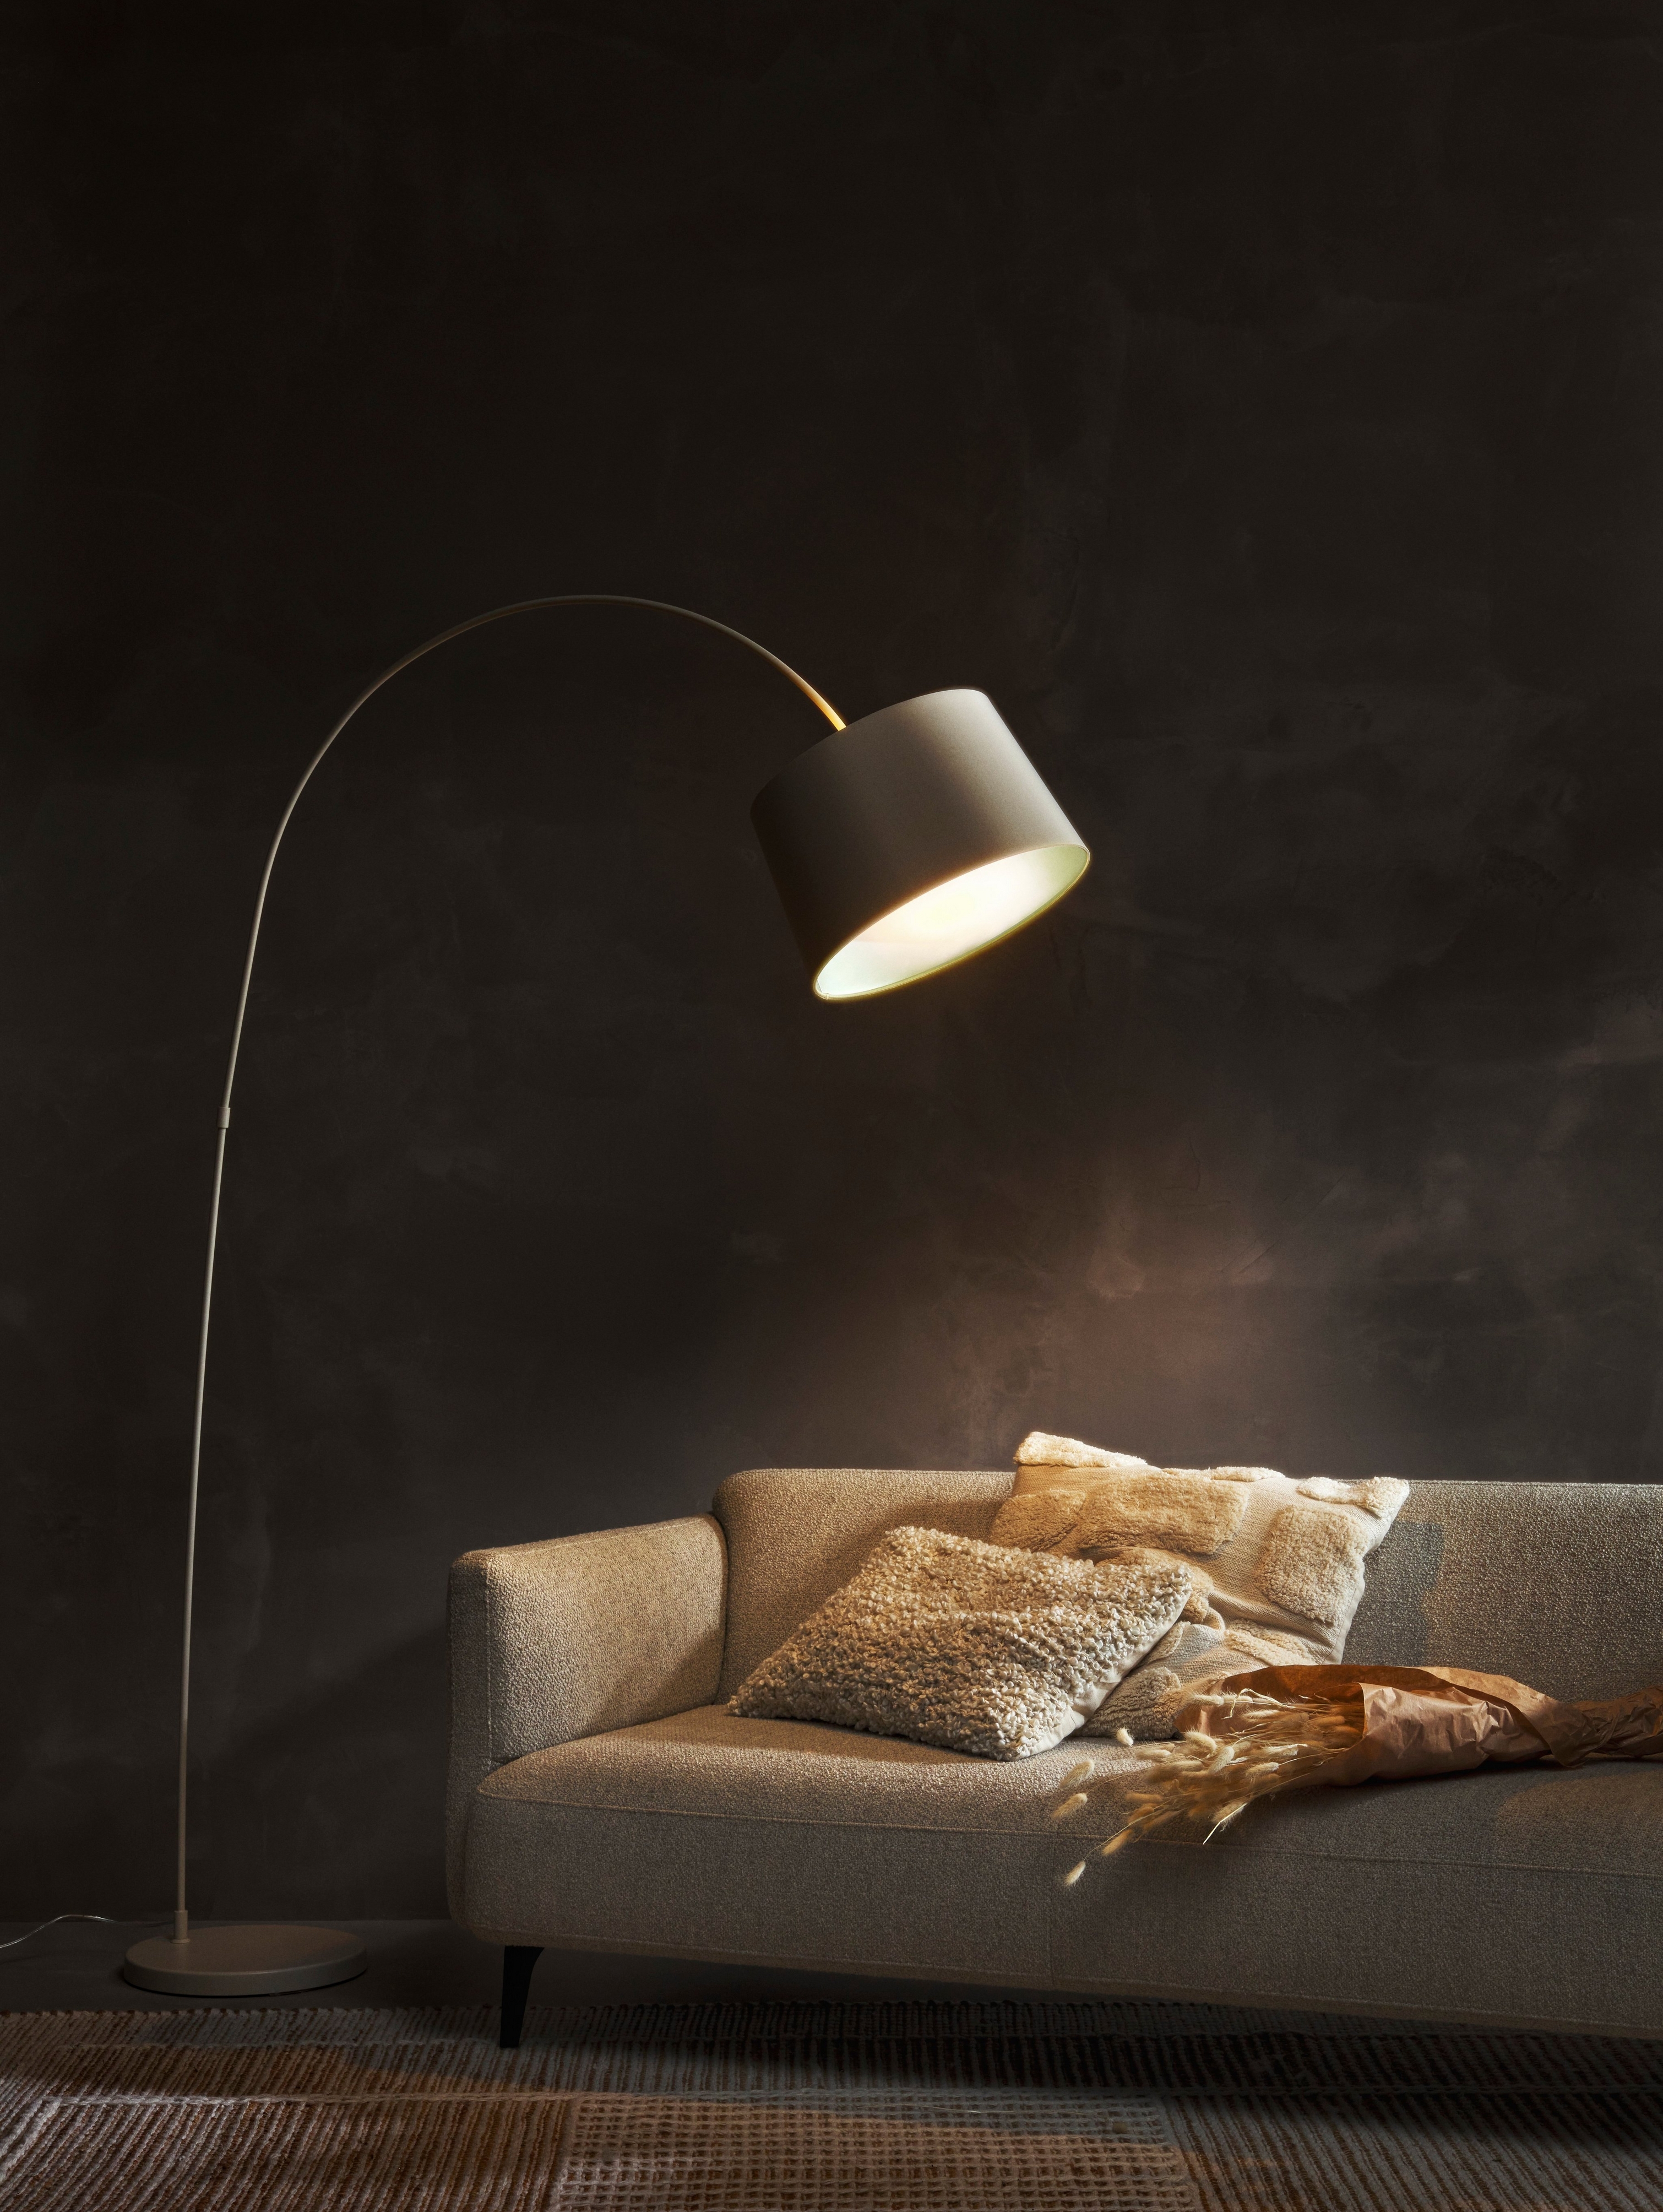 Kuta 落地灯照亮带有抱枕的灰色 Modena 沙发，背景为深色墙面。